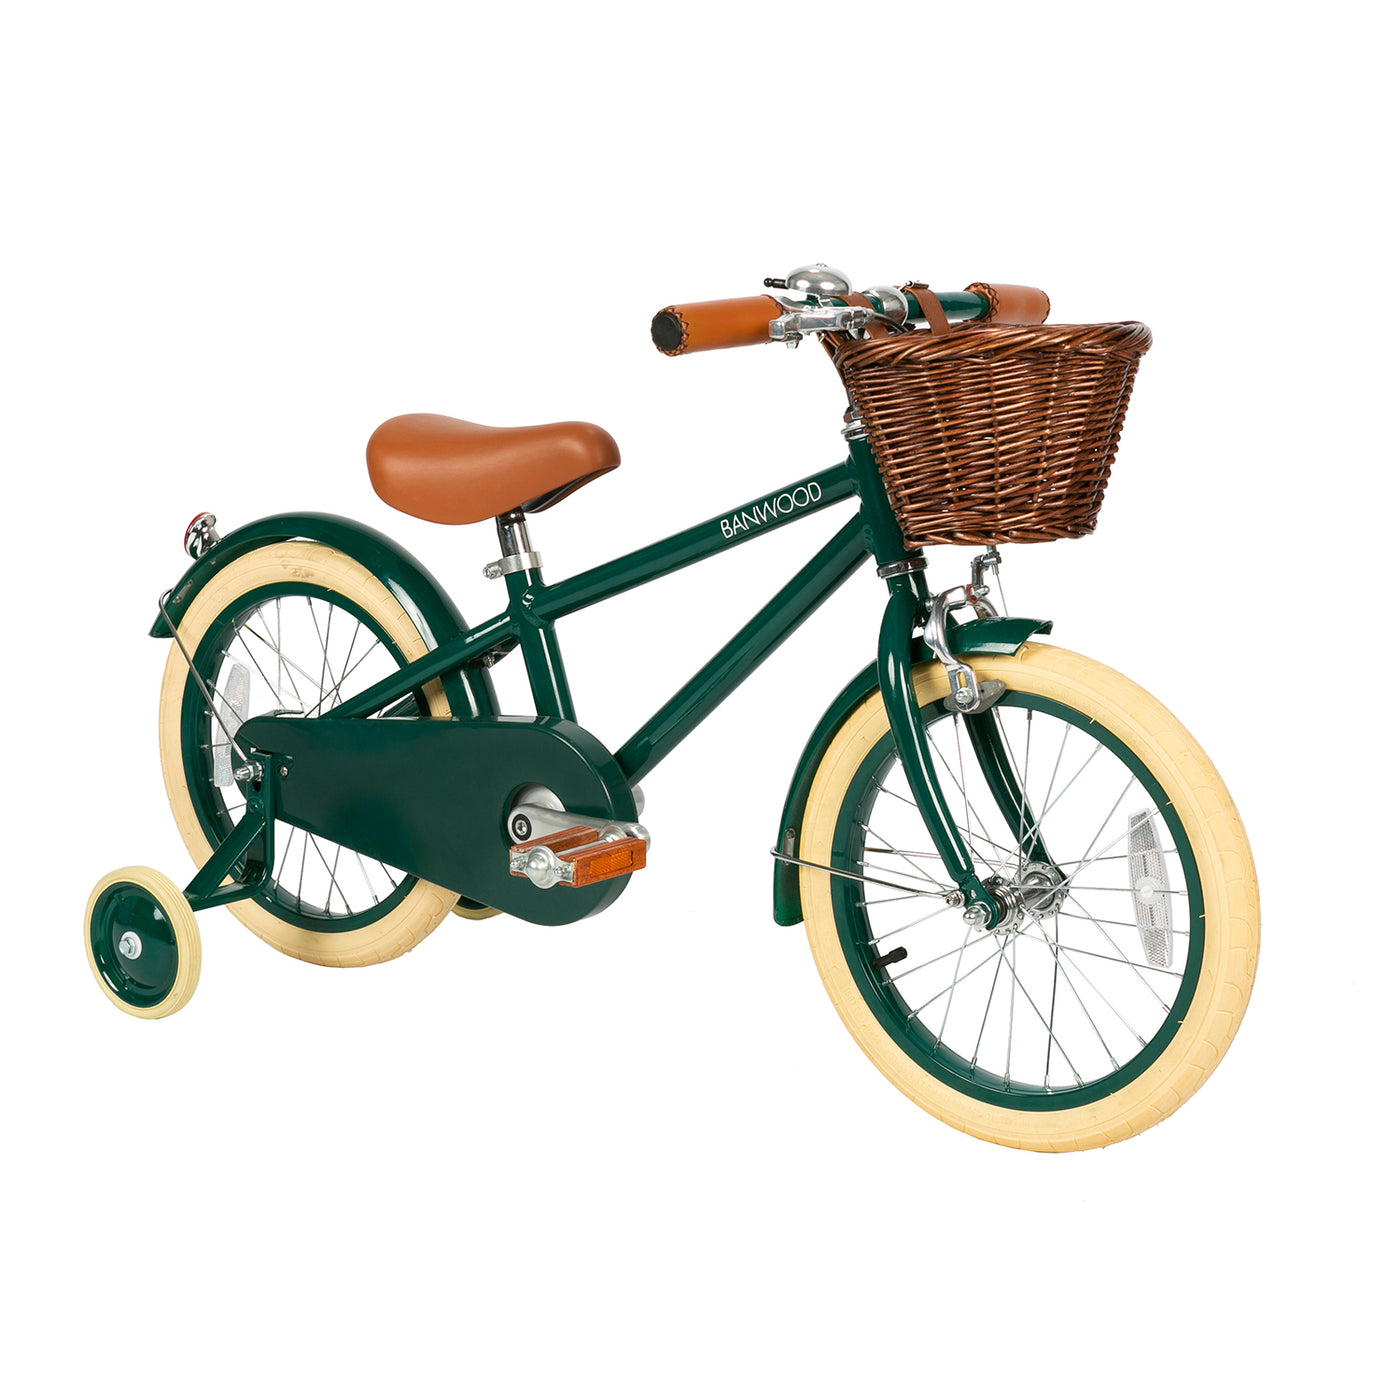 Banwood Classic 16" Kids Bike - Green